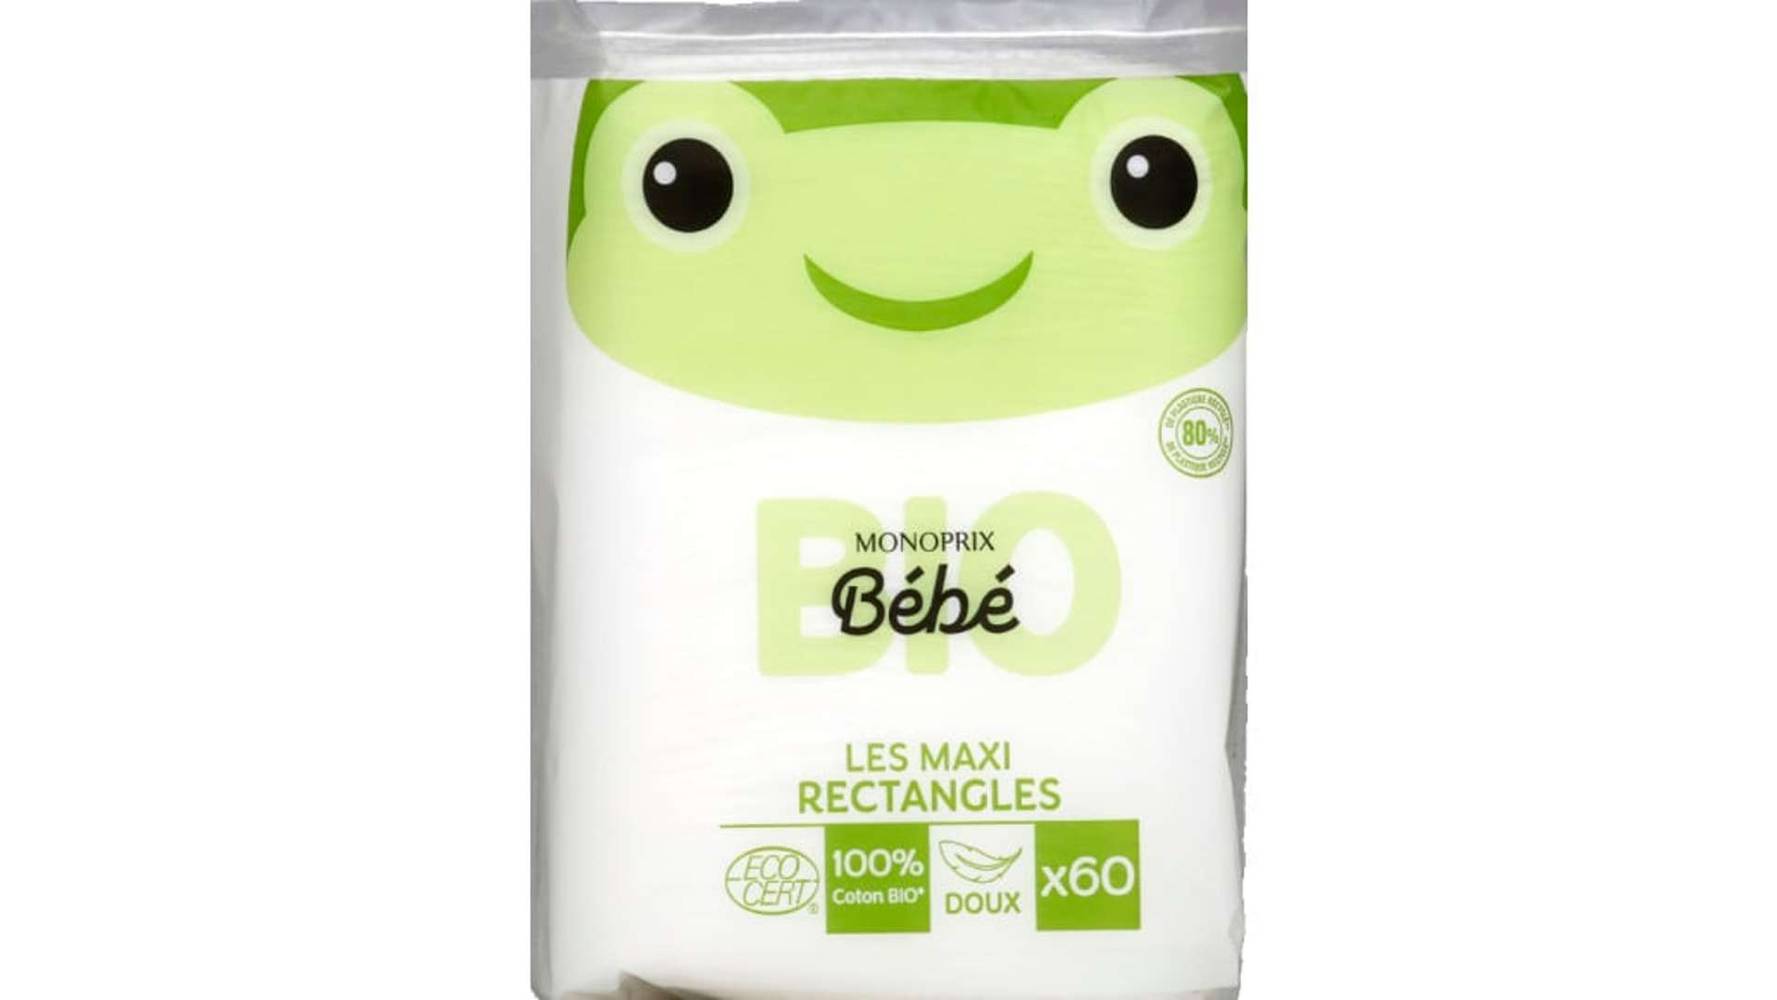 Monoprix bébé Les Maxi Rectangles 100% coton bio doux - Bébé Le paquet de 60